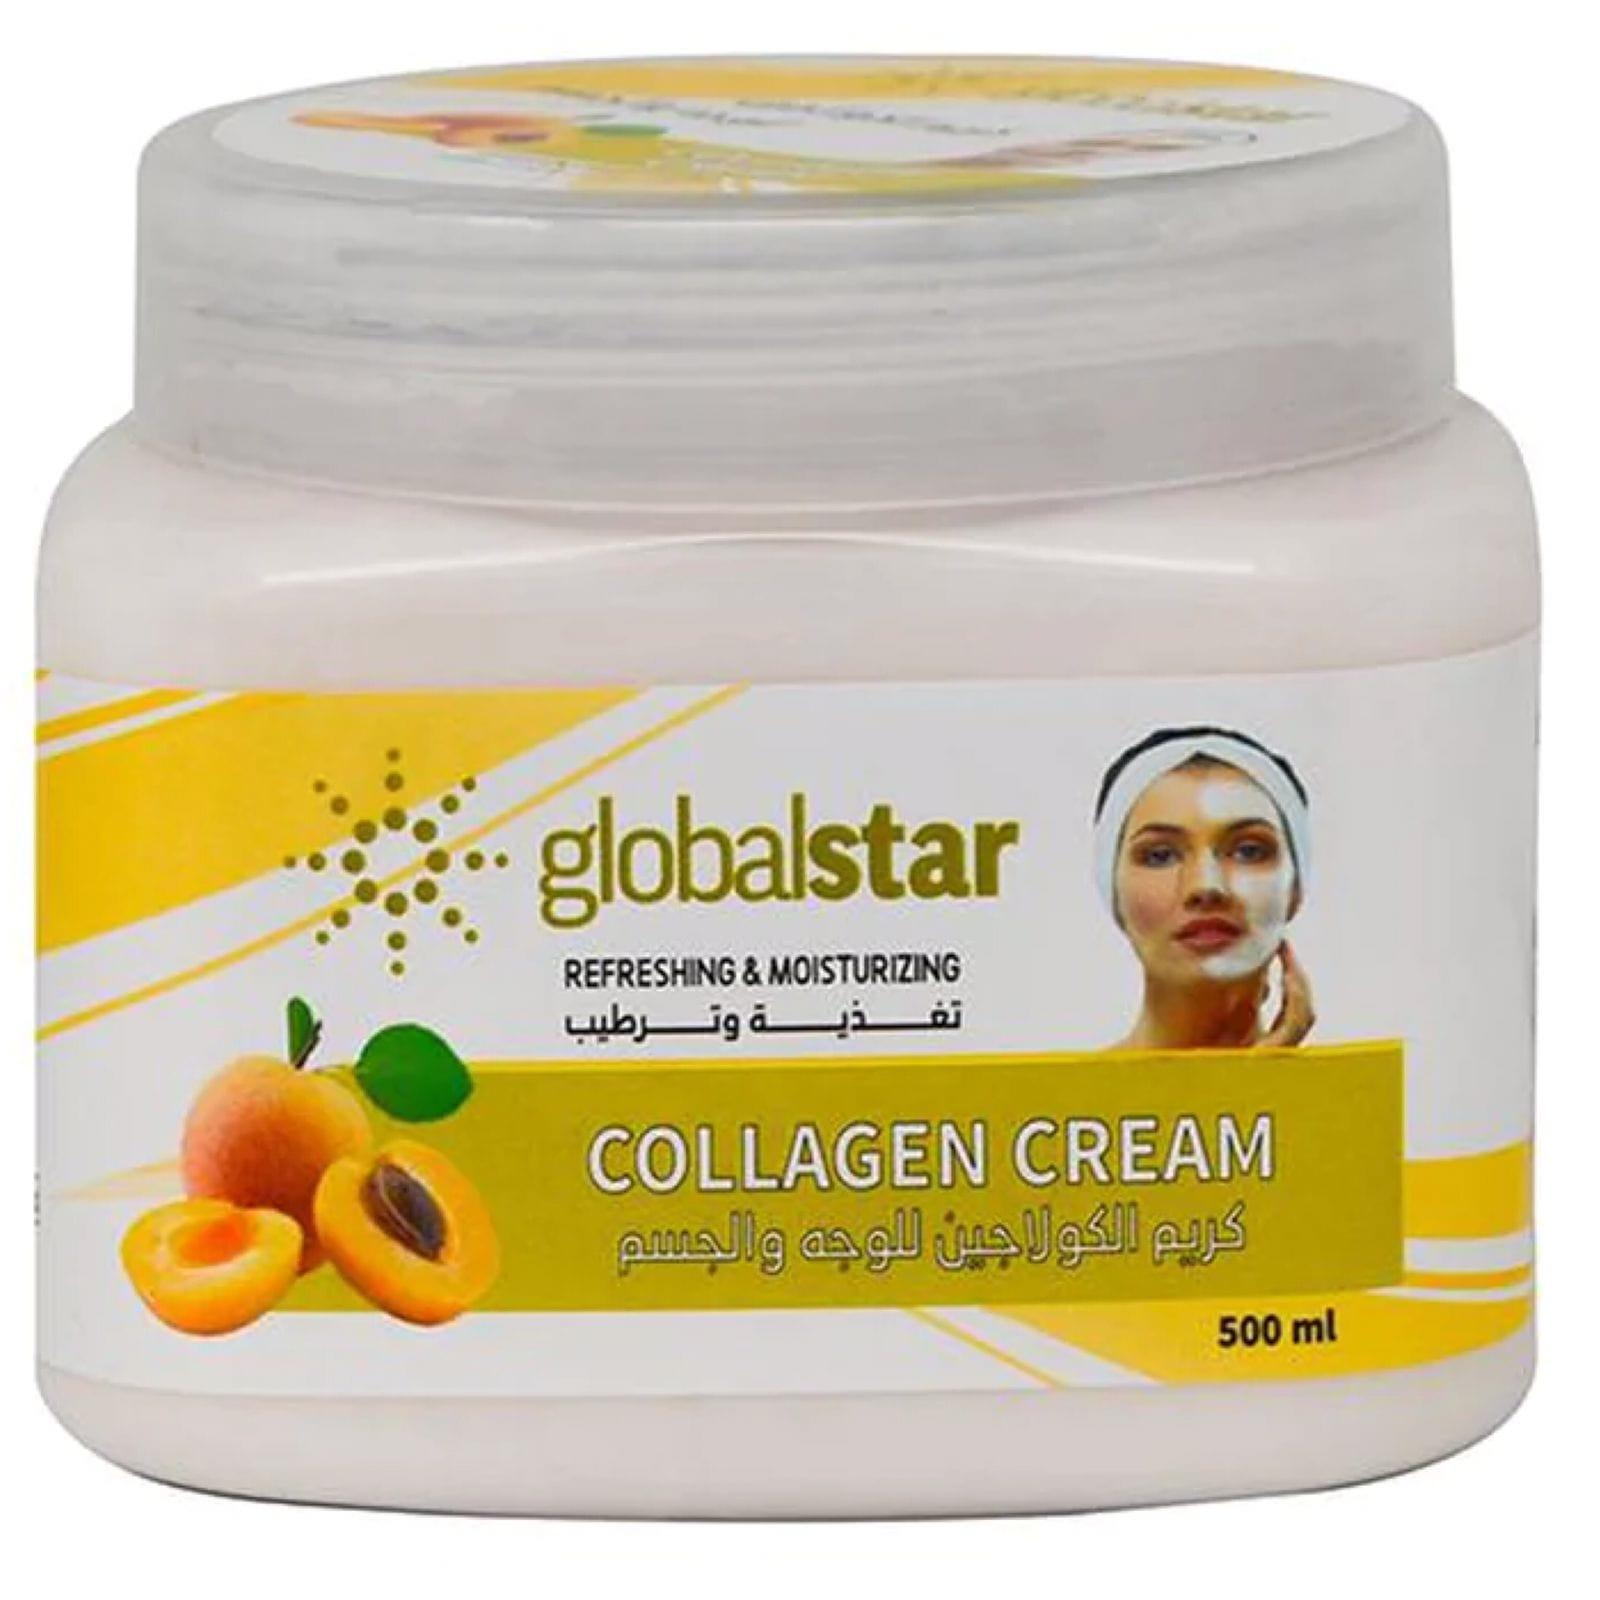 Globalstar Collagen Facial Cream 500ml